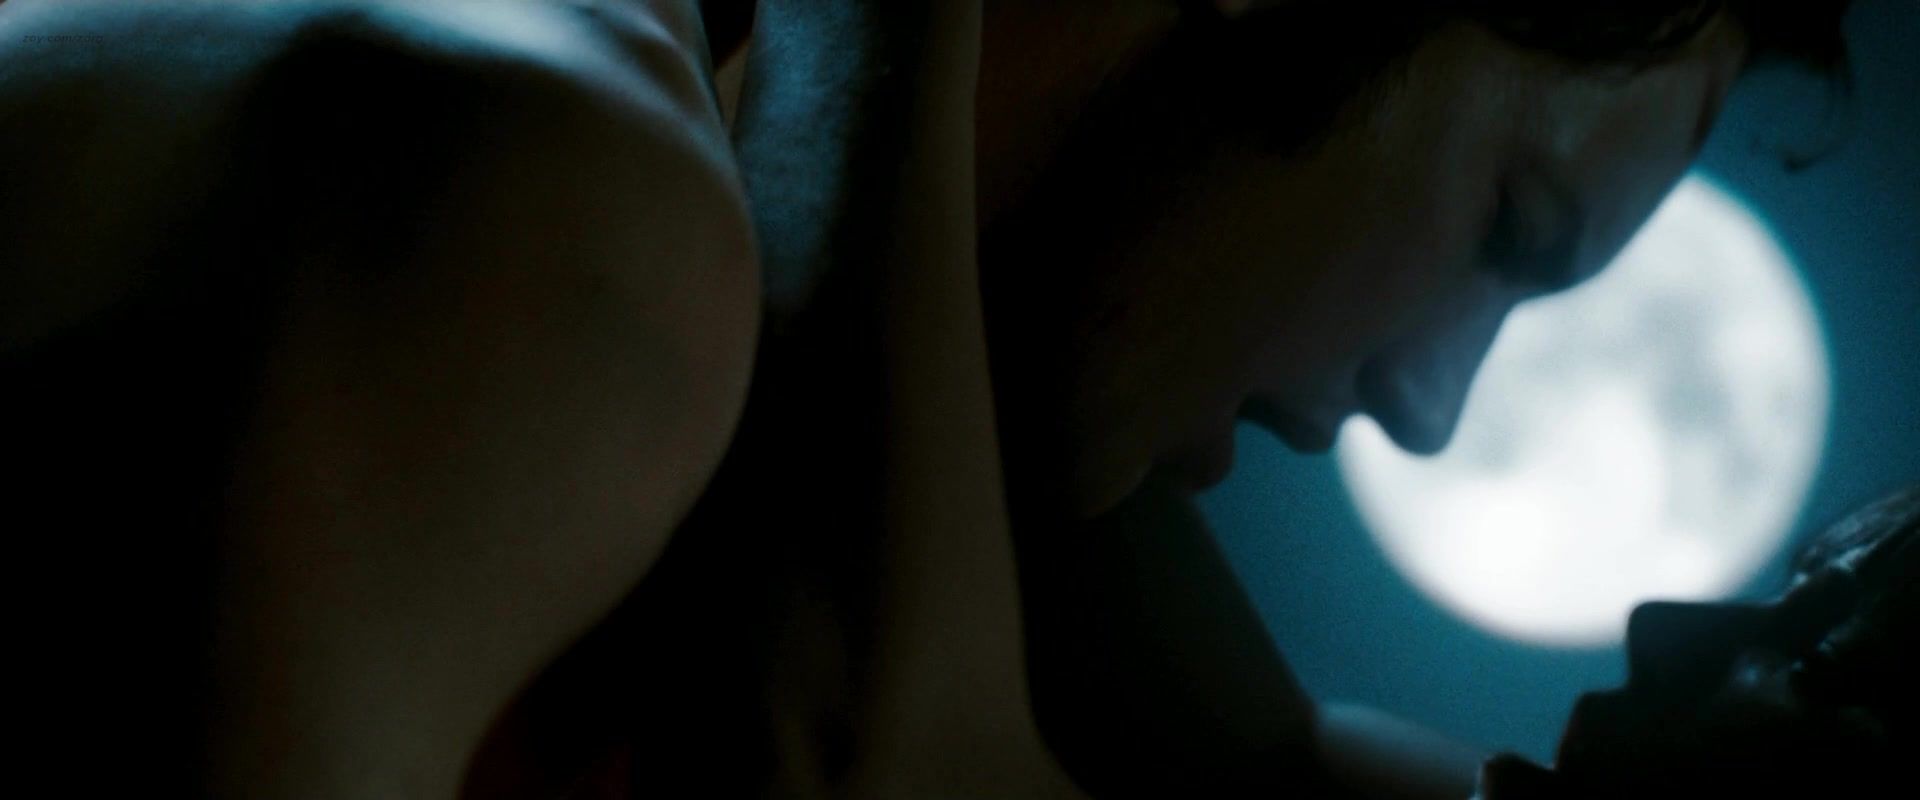 Screaming Malin Akerman, Carla Gugino naked - Watchmen (2009) Boobies